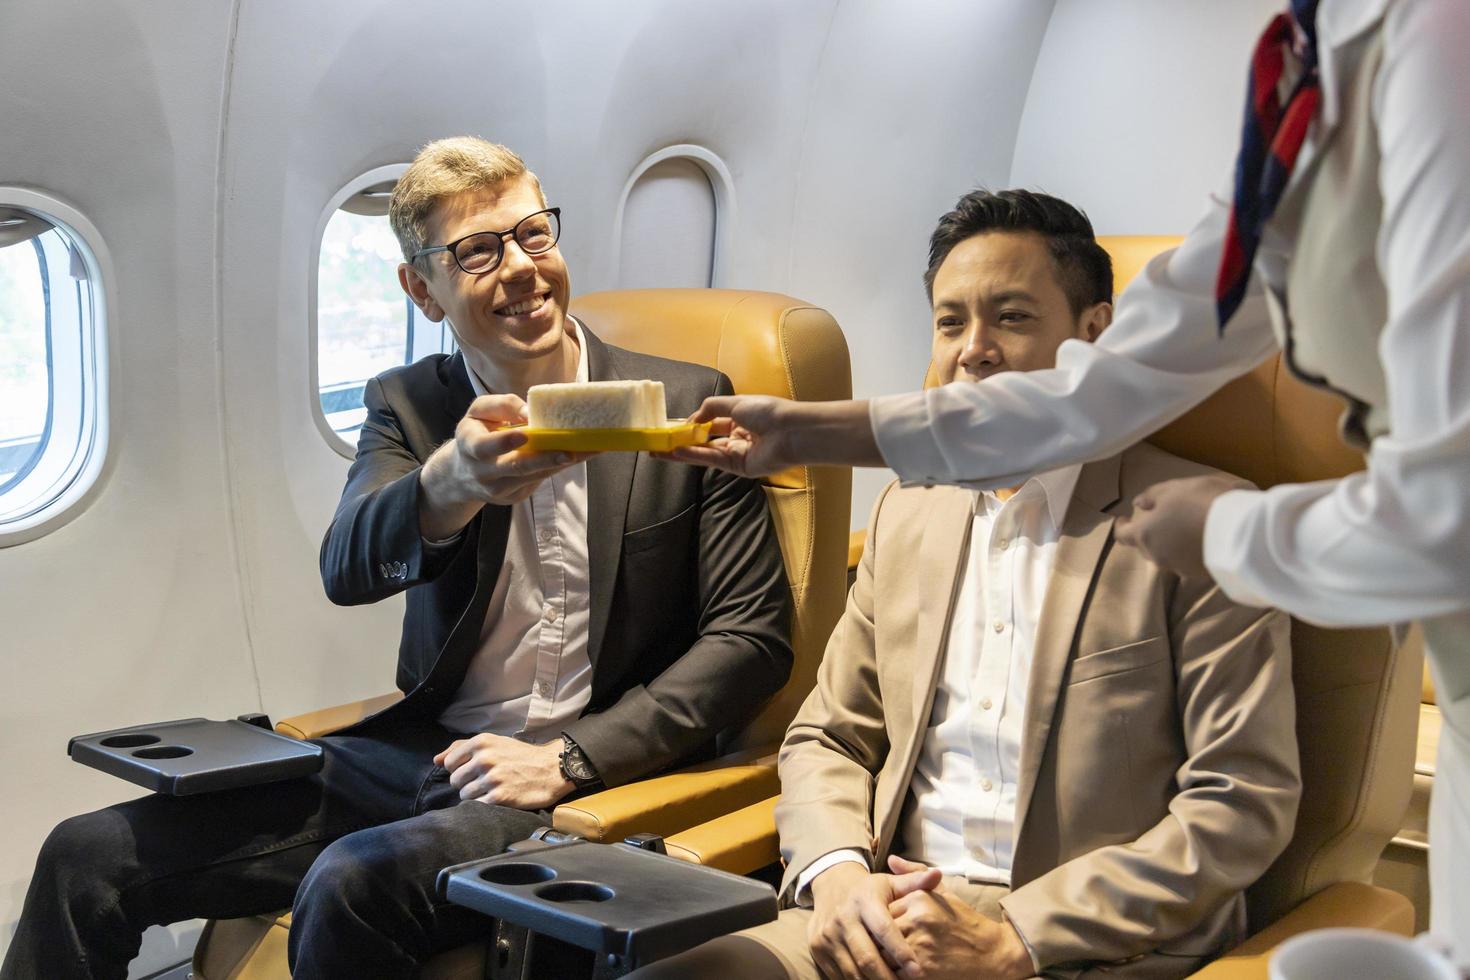 l'assistente di volo sta servendo cibo al cliente per il pasto in volo, il viaggio aereo e il concetto di trasporto foto